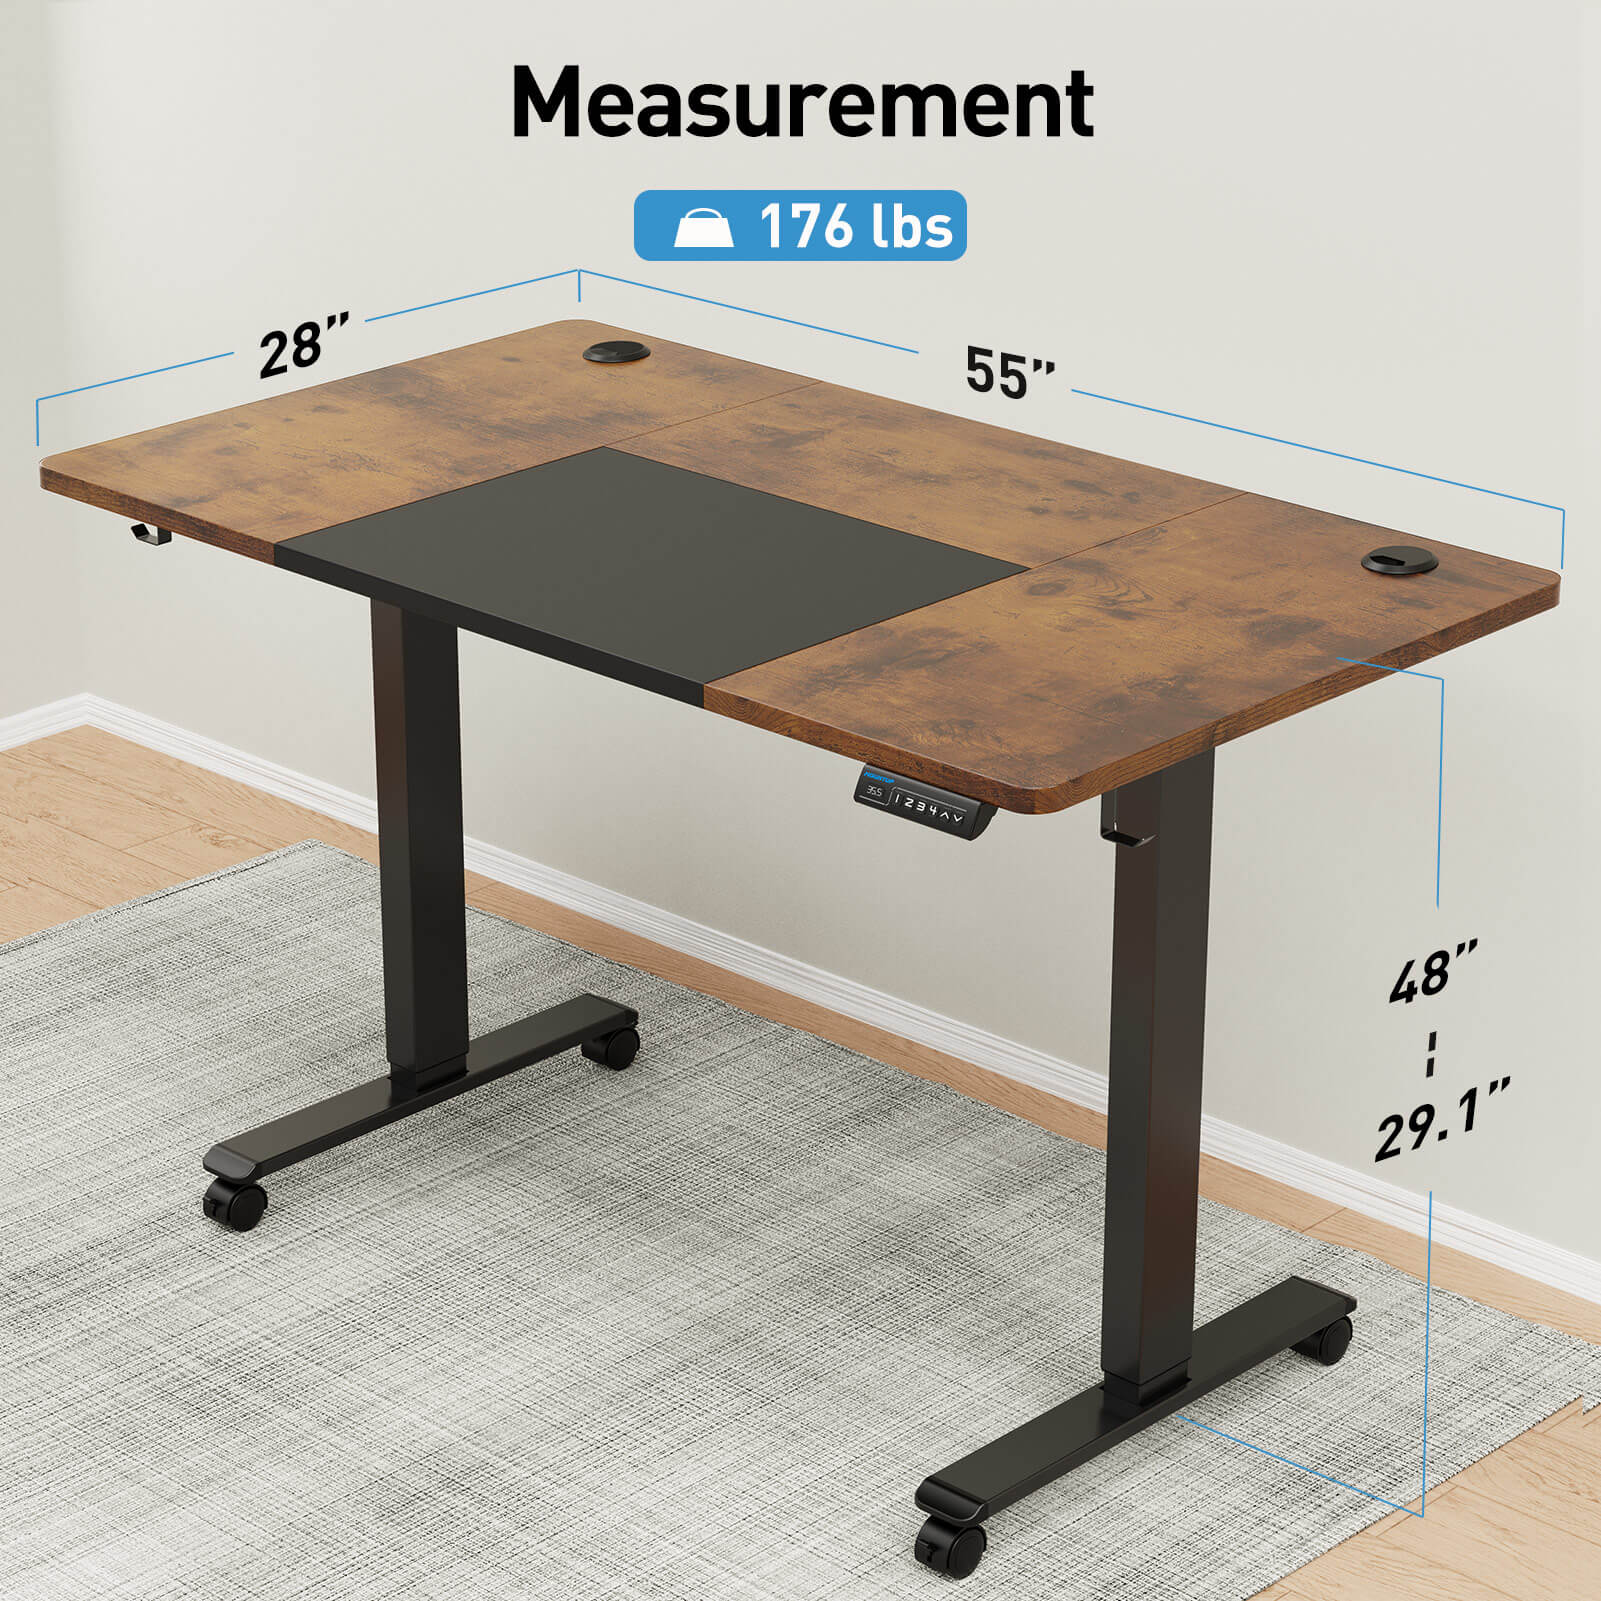 Electric Height Adjustable Standing Desk - Black & Rustic Brown MUD314